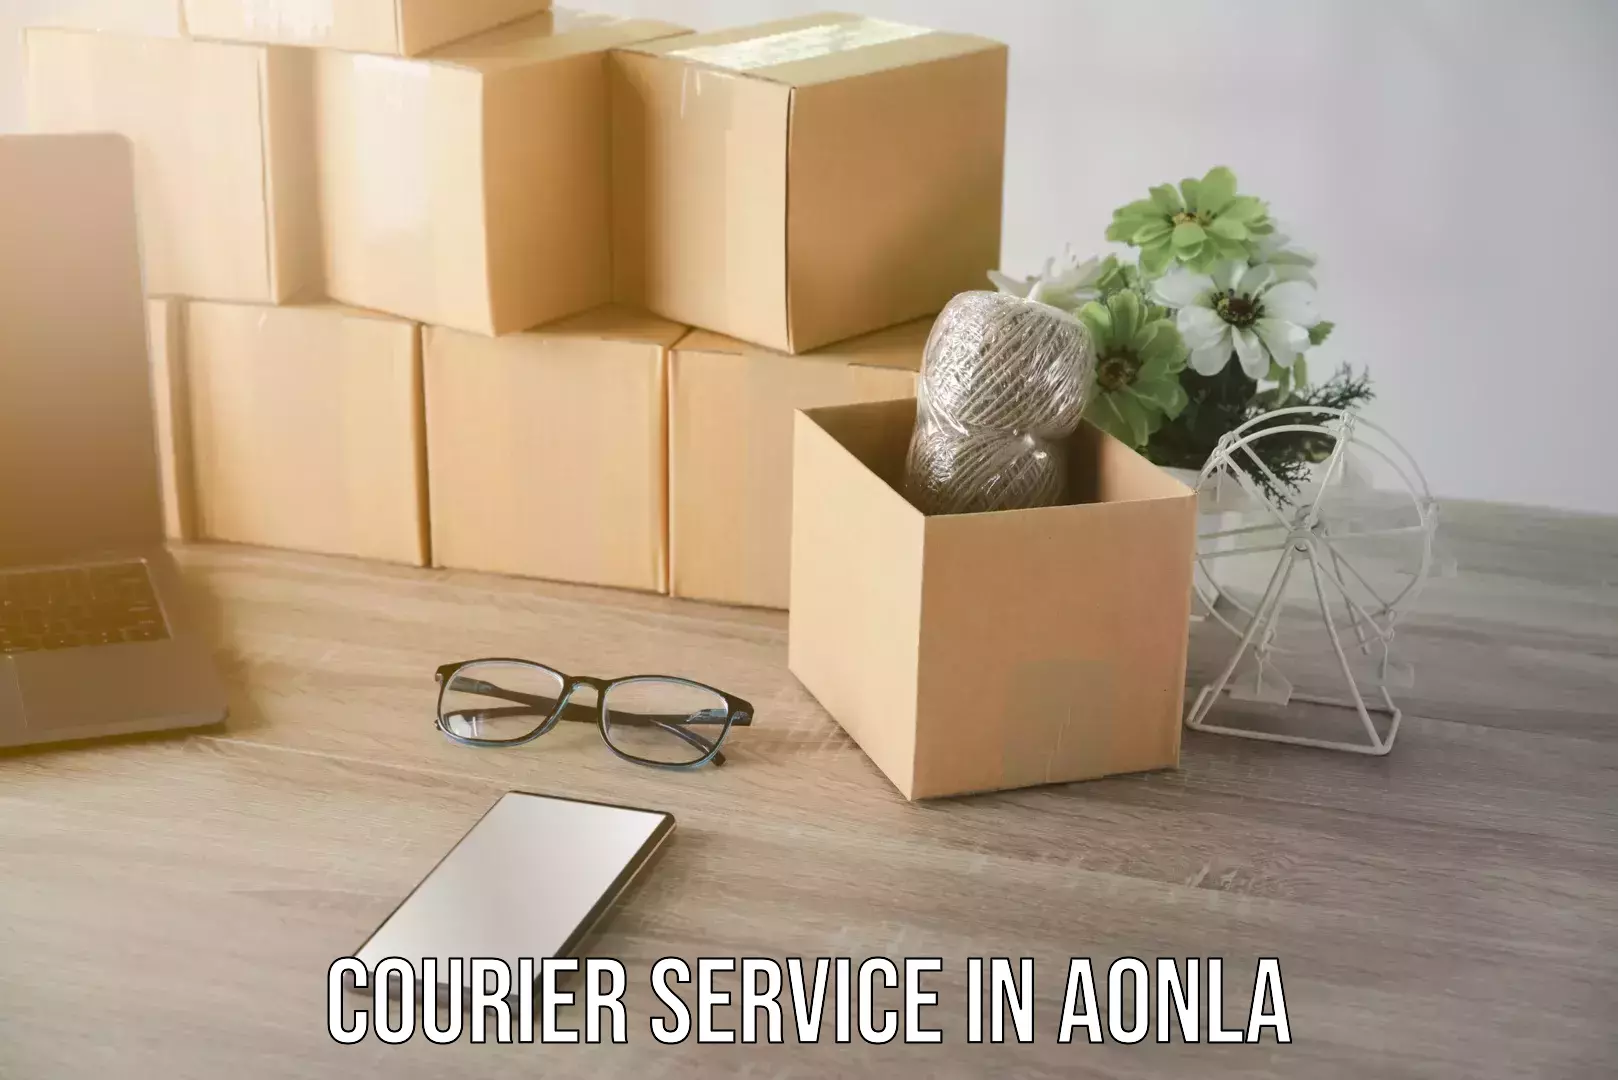 Cargo courier service in Aonla